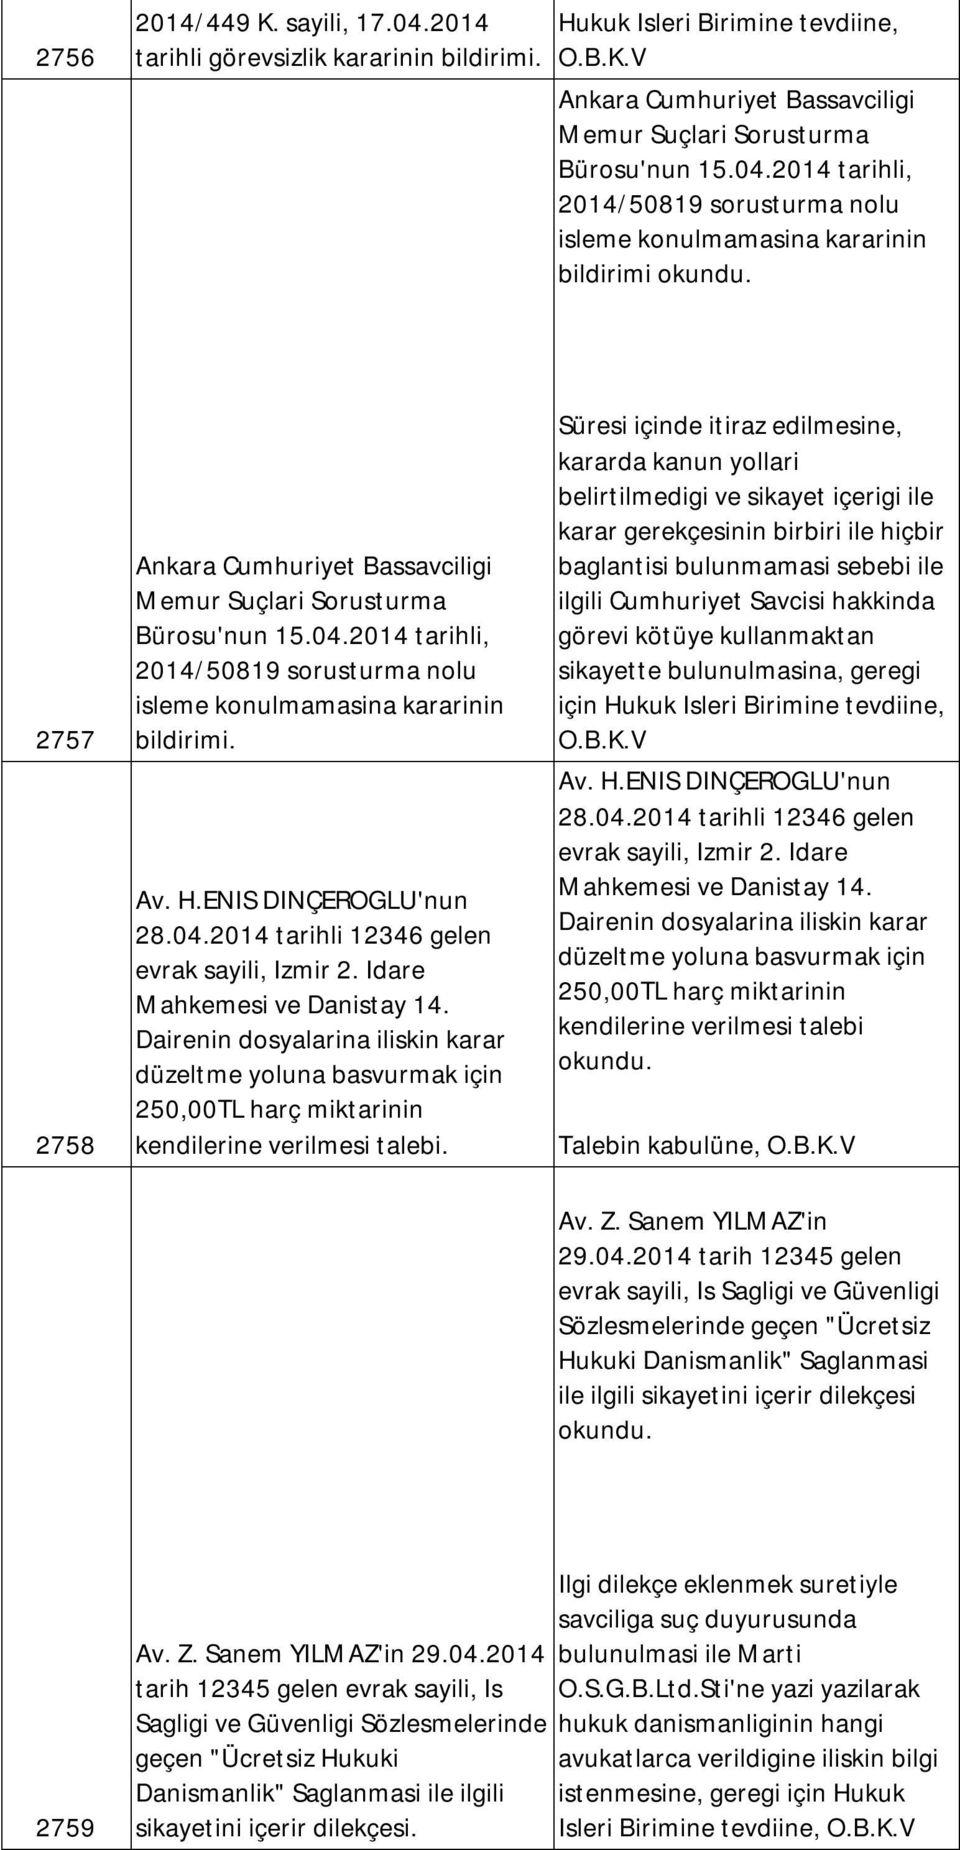 2014 tarihli, 2014/50819 sorusturma nolu isleme konulmamasina kararinin bildirimi 2757 Ankara Cumhuriyet Bassavciligi Memur Suçlari Sorusturma Bürosu'nun 15.04.